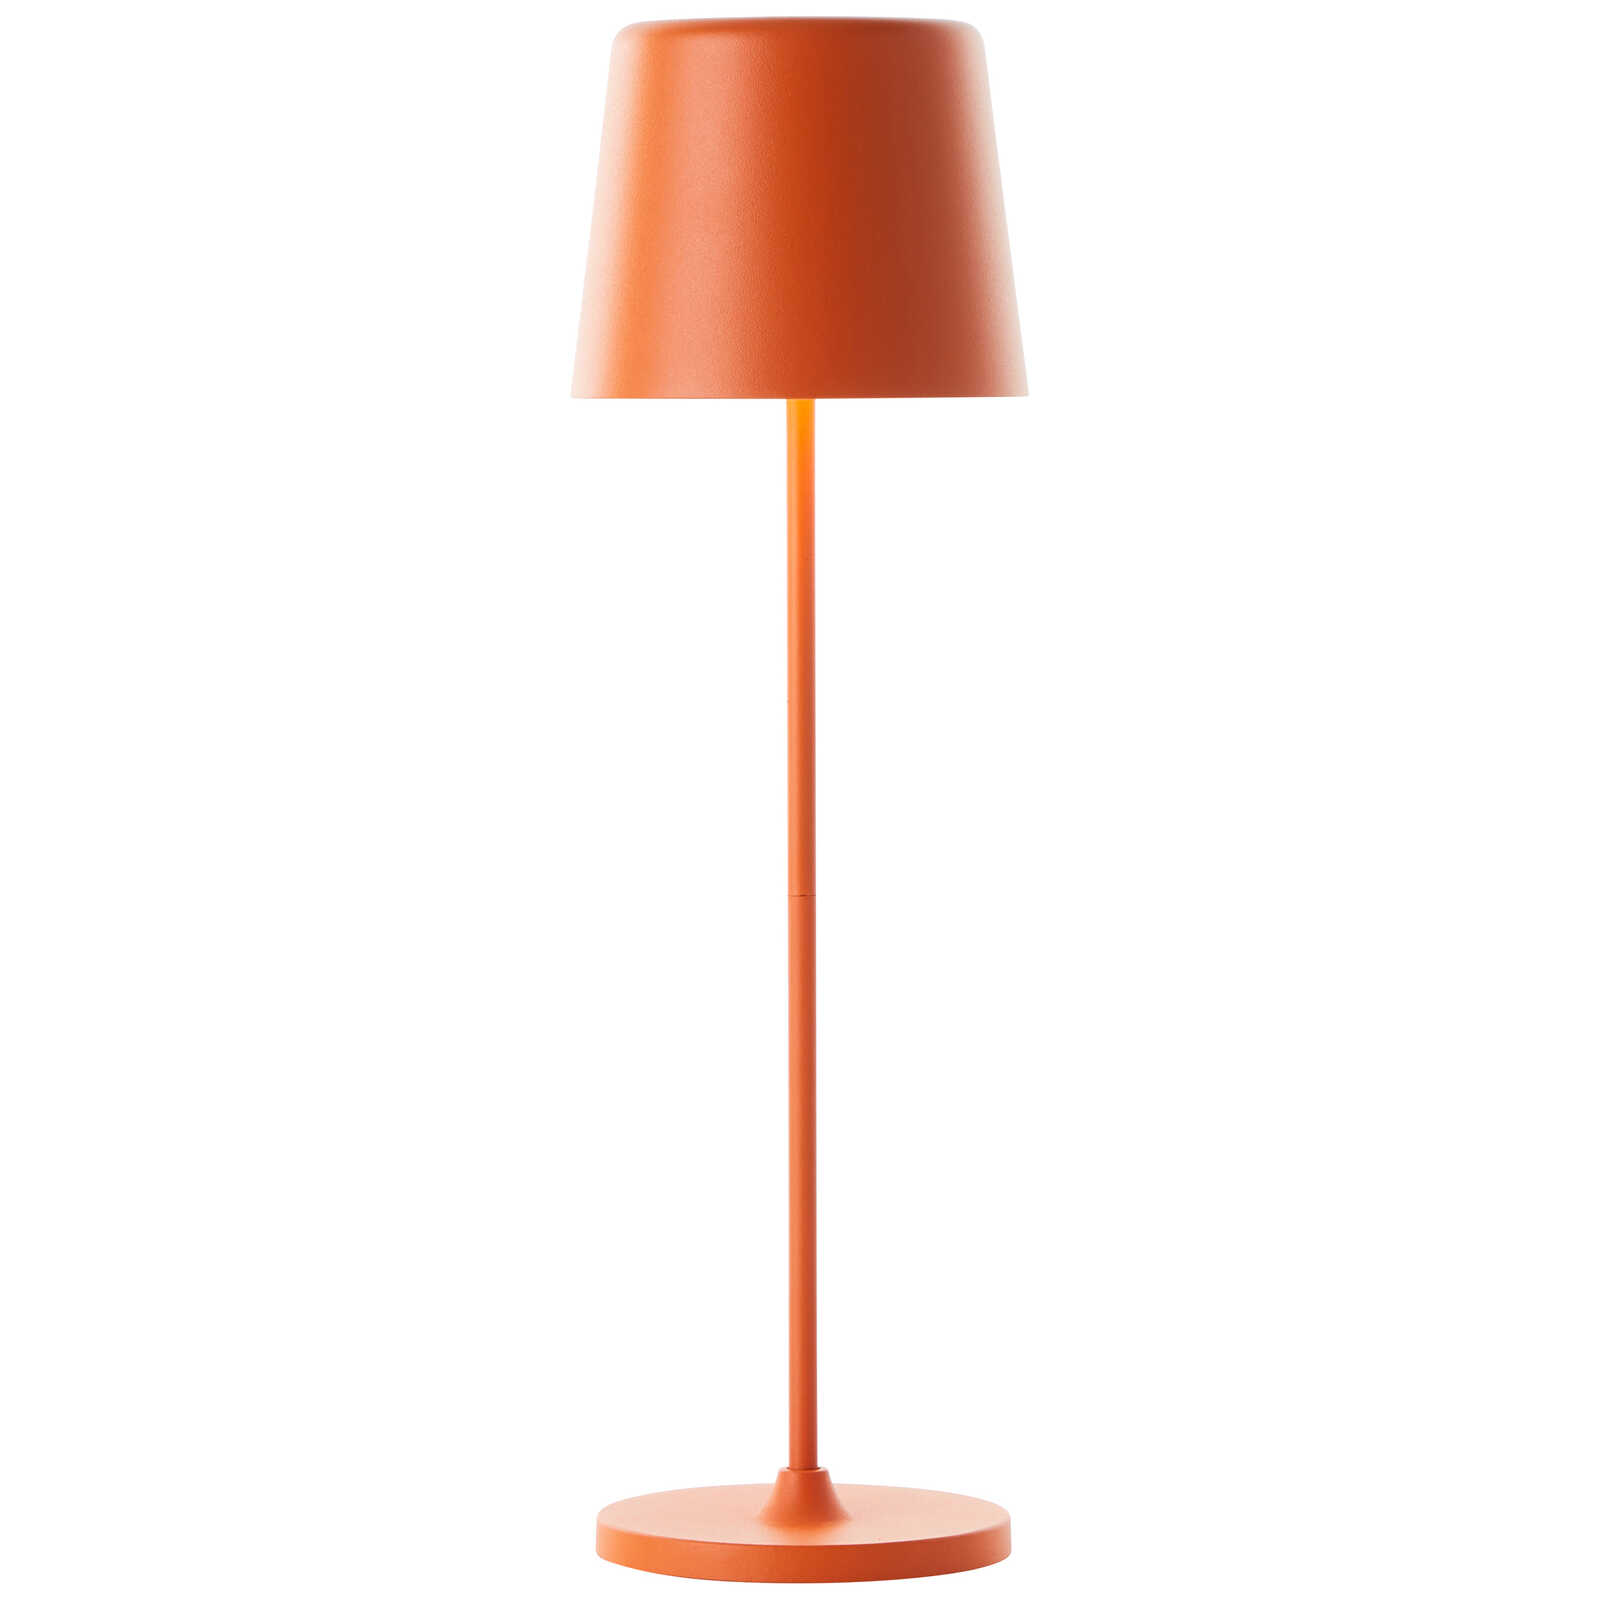             Lampada da tavolo in metallo - Cosy 7 - Arancione
        